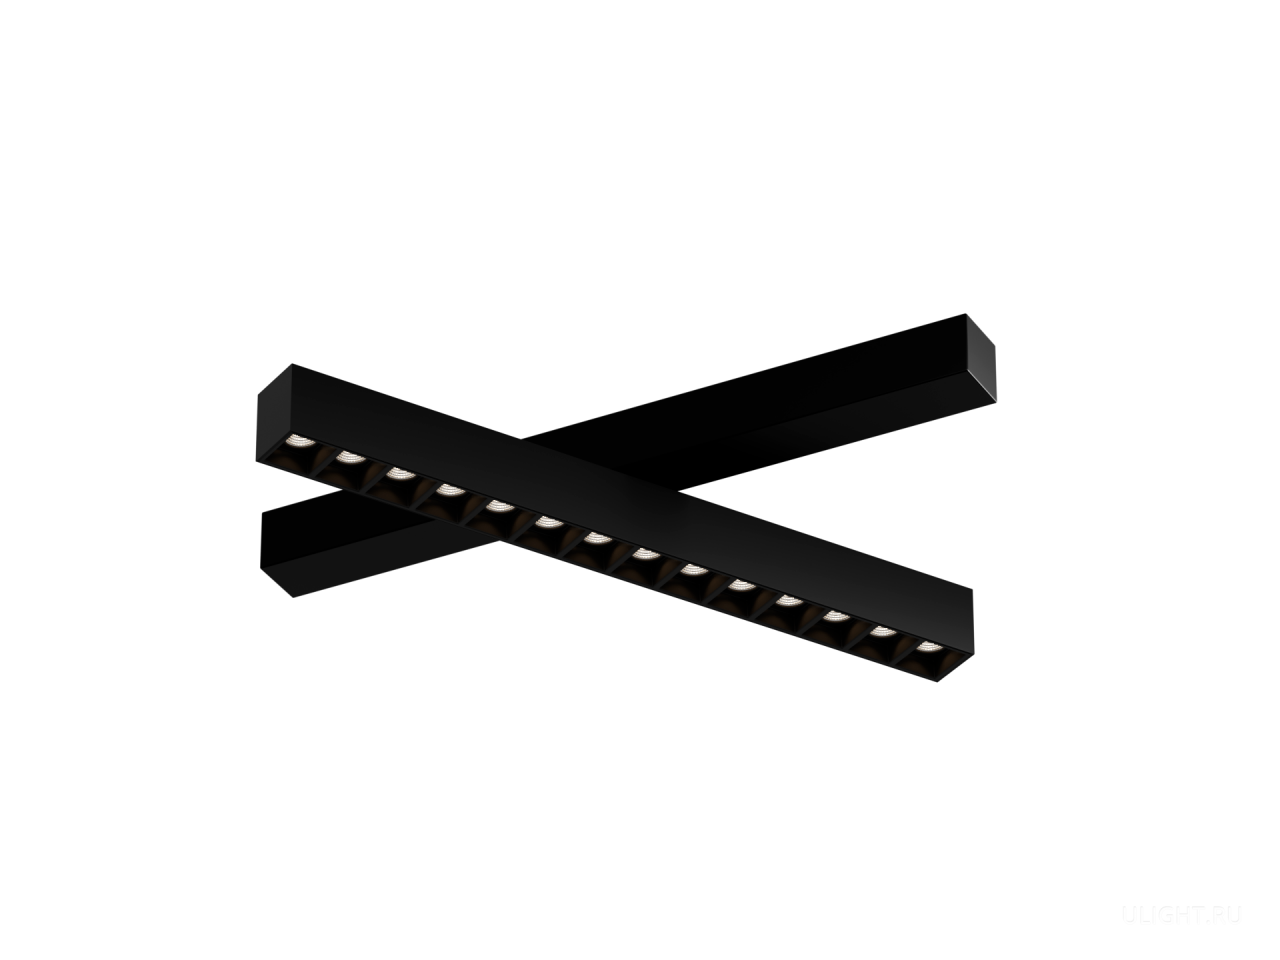 Светильник линейного типа c углами рассеивания: 10°, 40°, 60°. Направленный свет без засветов на потолке. Новые линзы создают равномерное освещение без ореолов и затемнений. Поворотная конструкция позволяет поворачивать светильник на 360°.